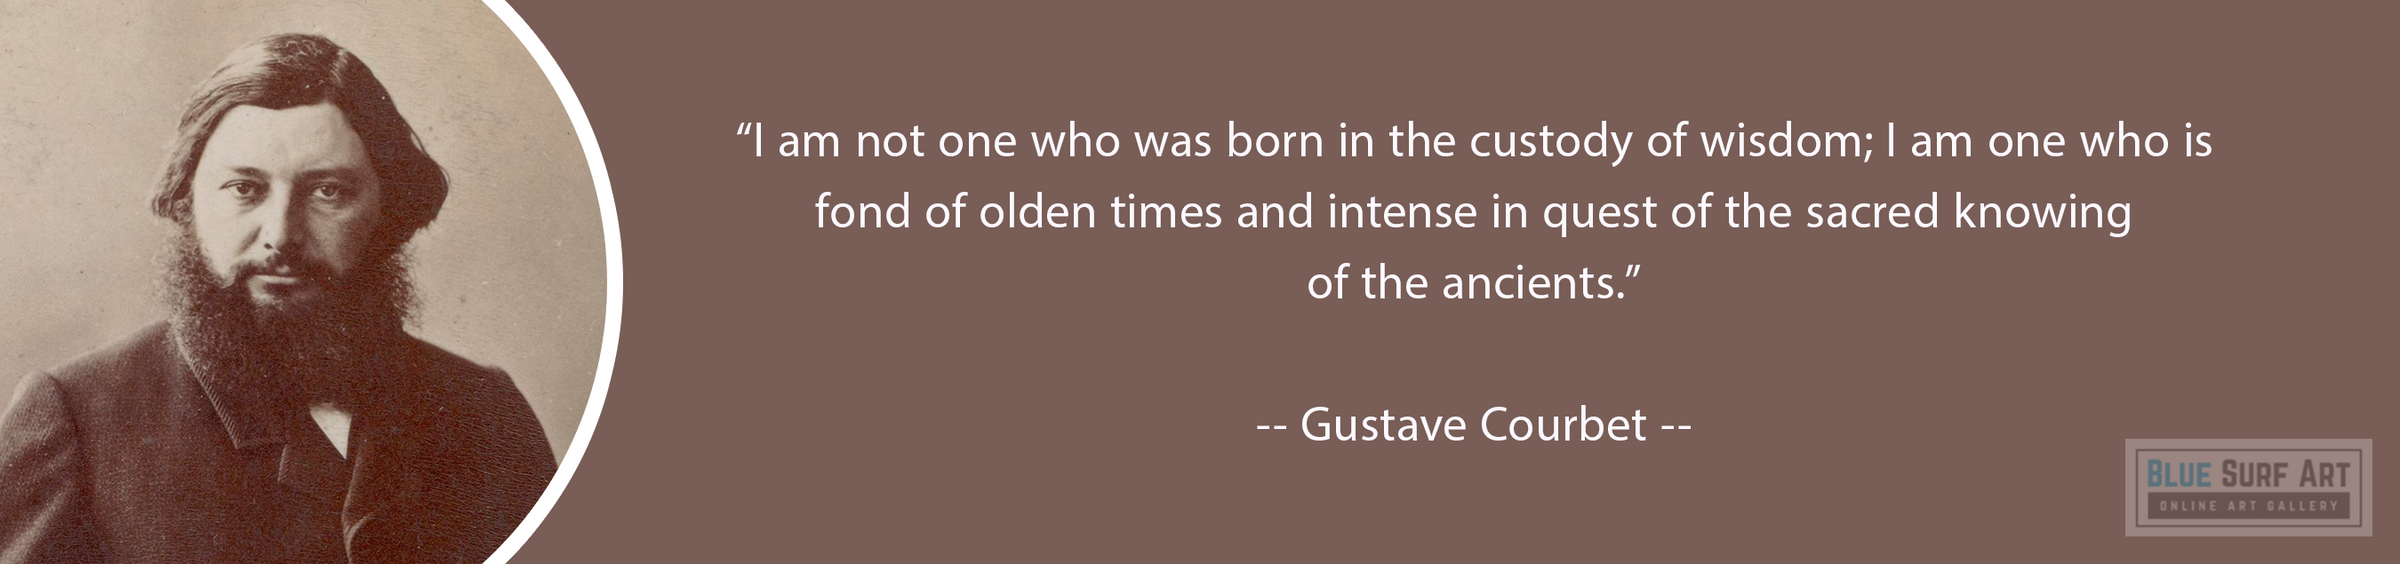 Jean Désiré Gustave Courbet 